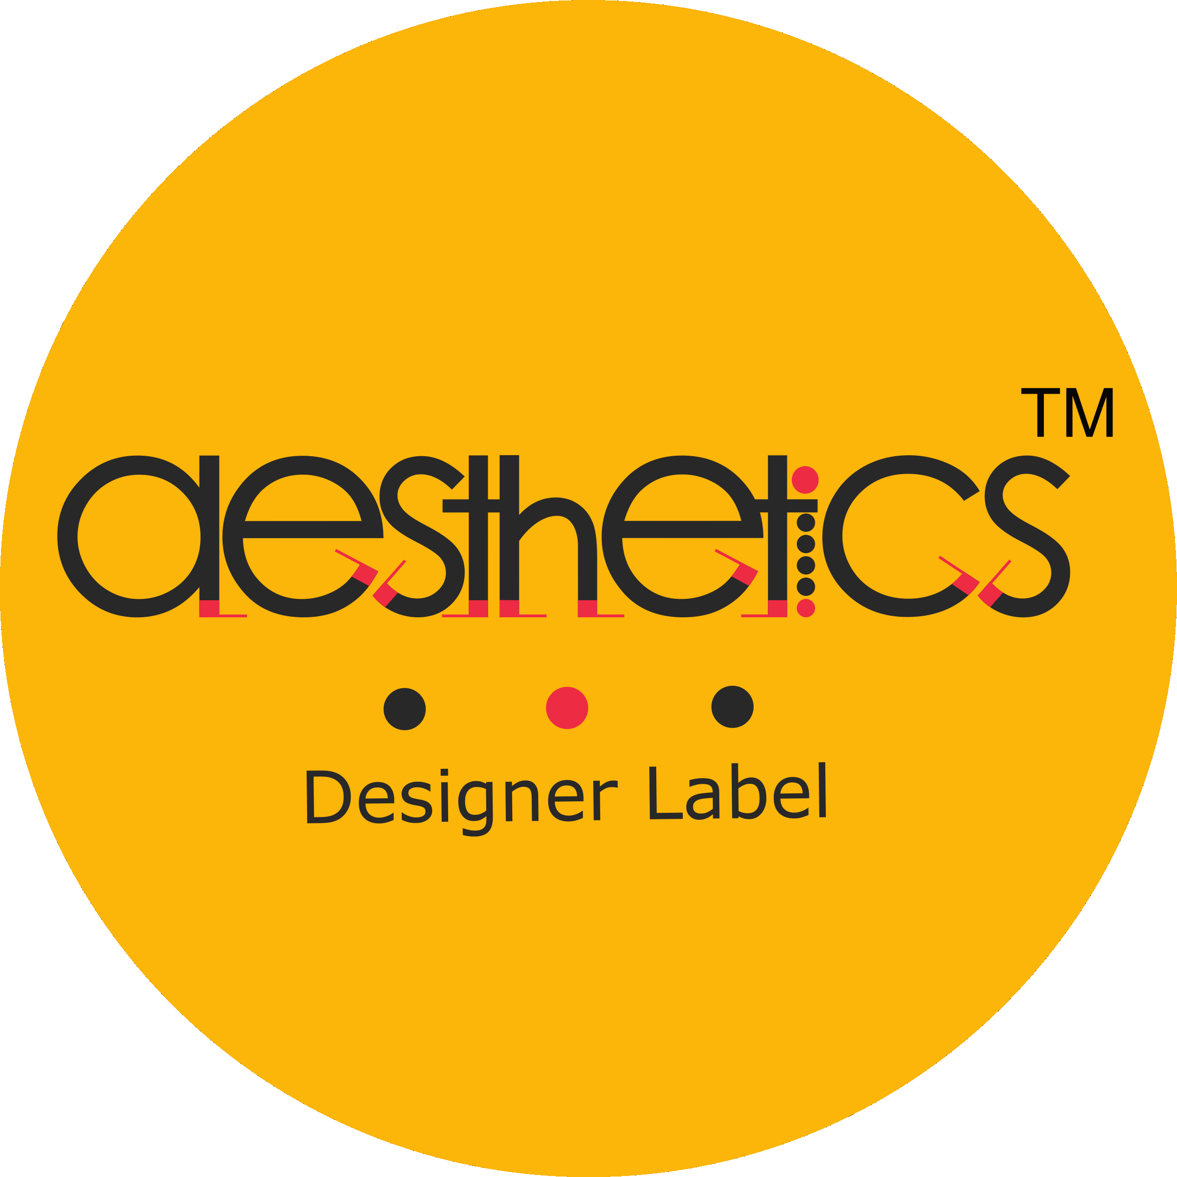 Aesthetics Designer Label